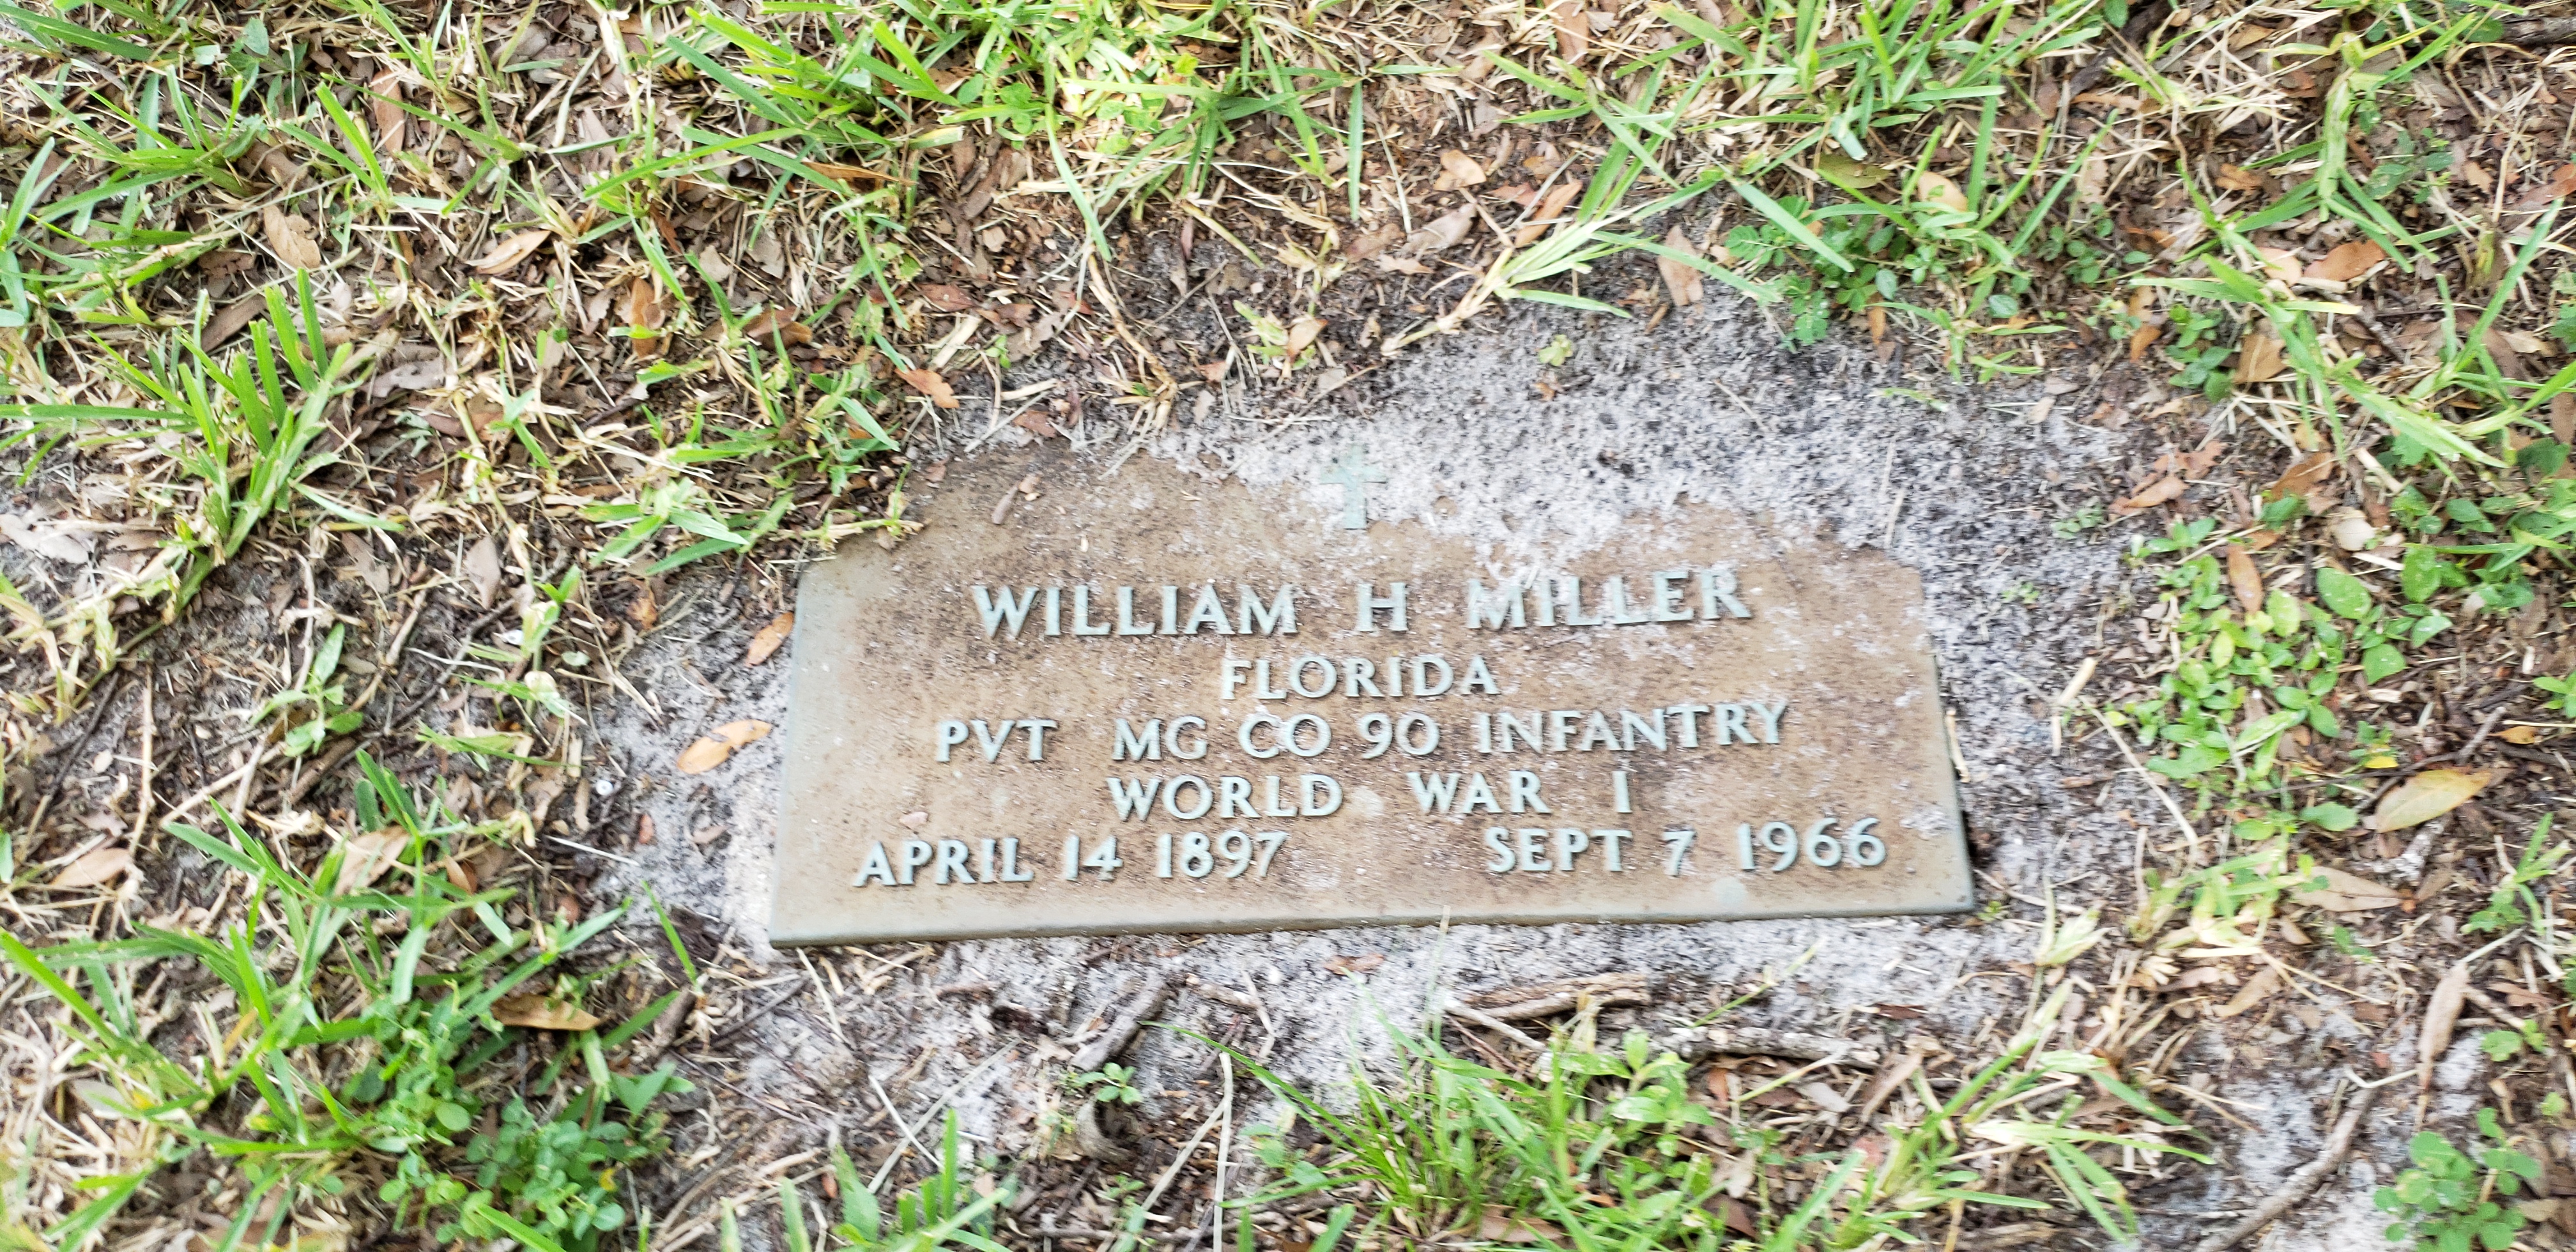 William H Miller